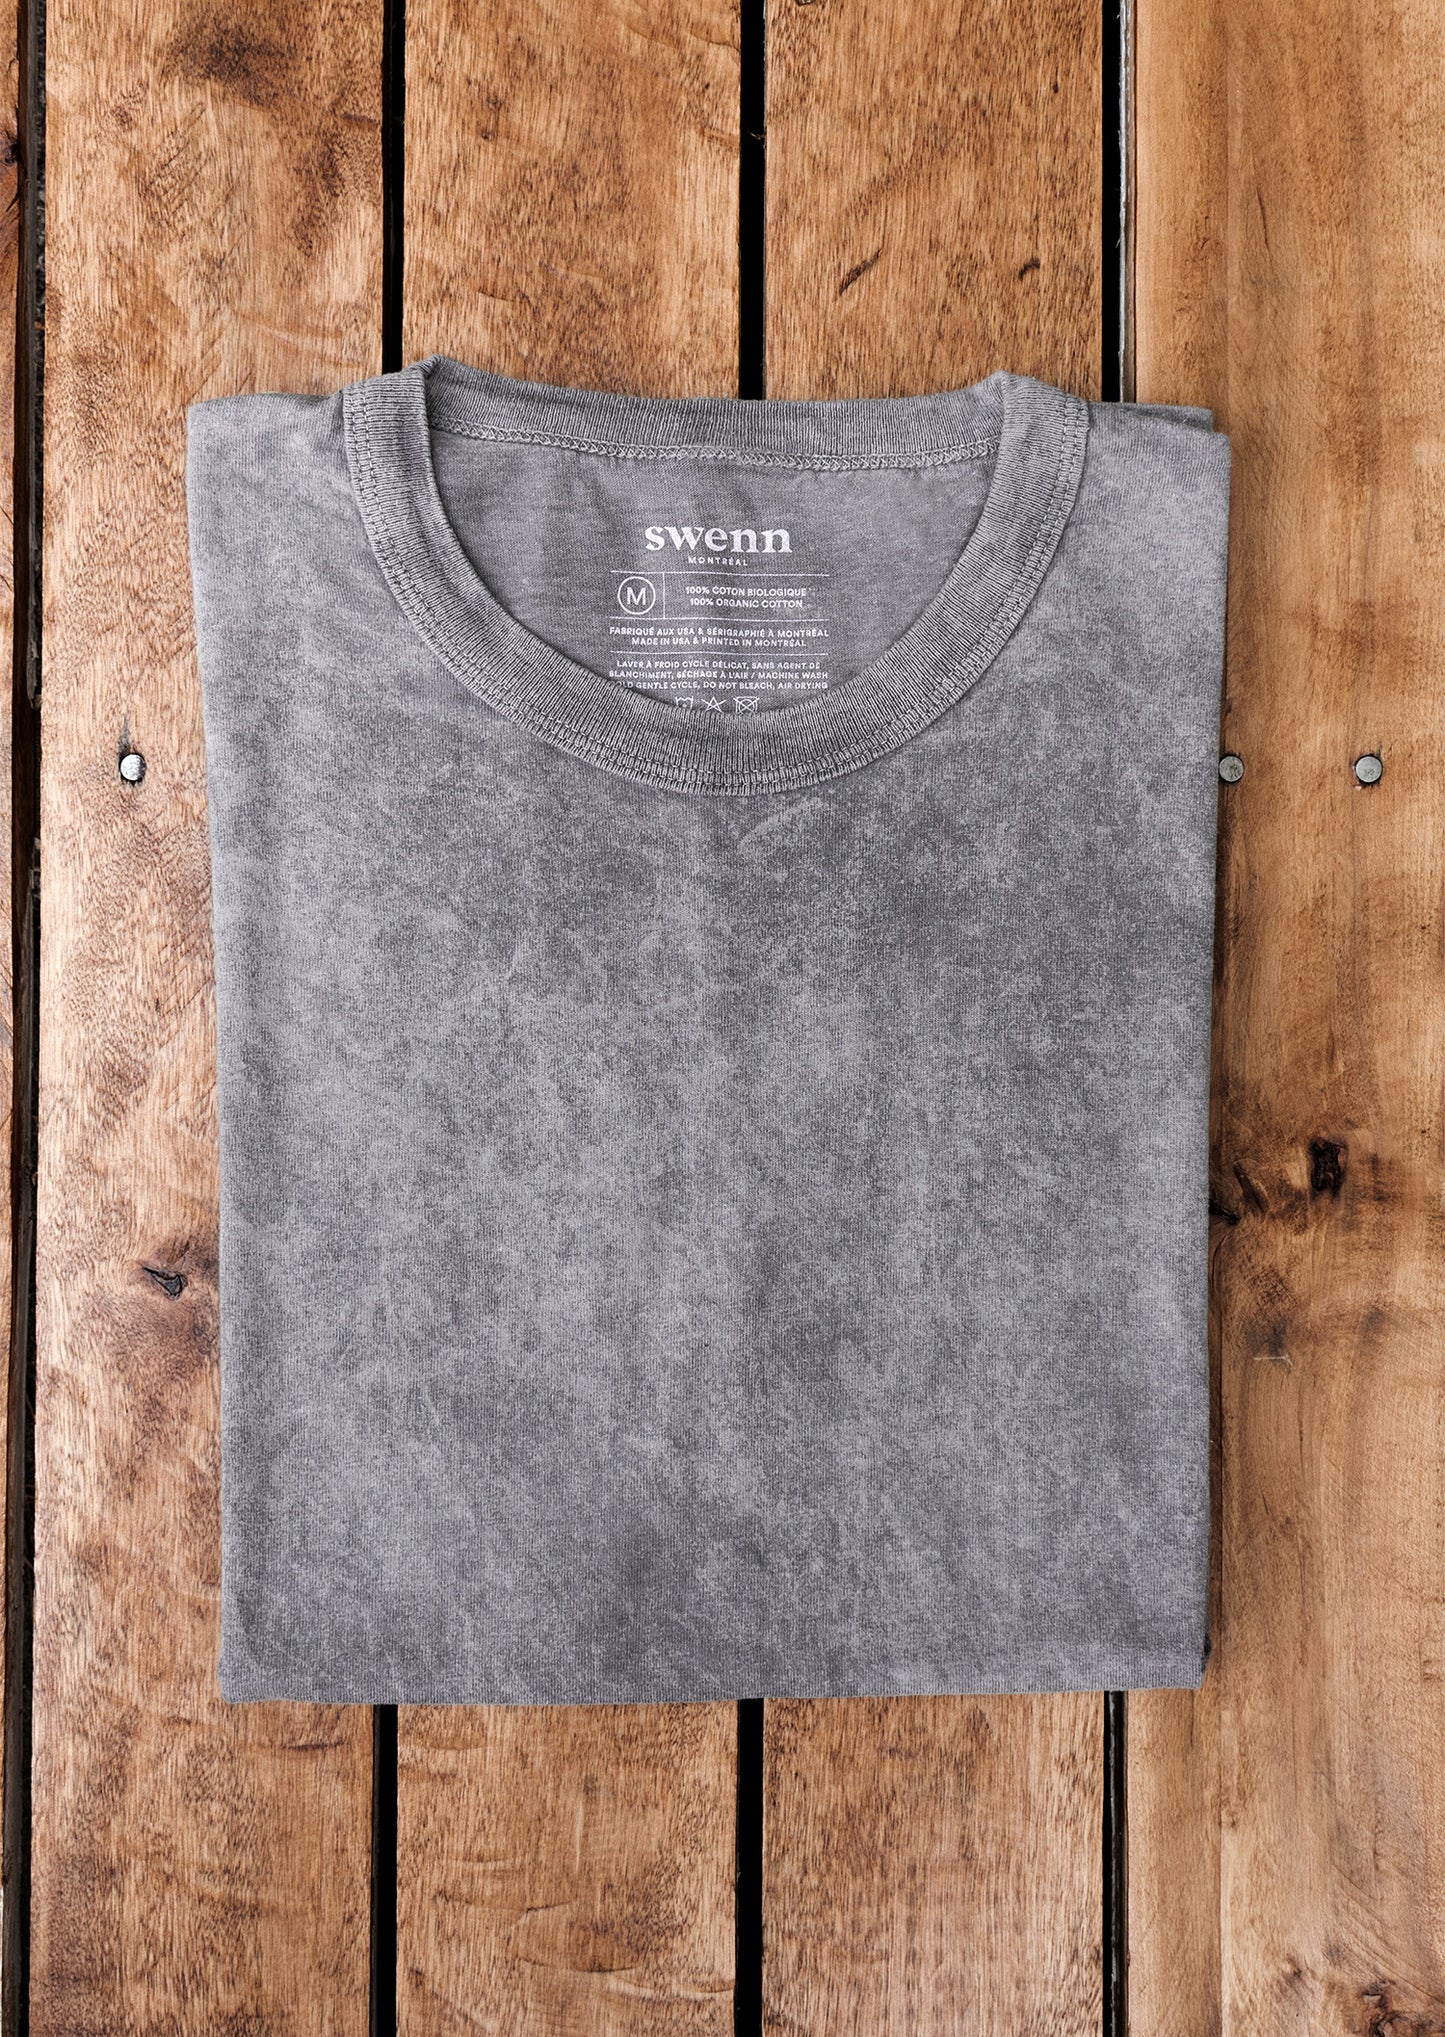 SWENN - Washed organic t-shirt